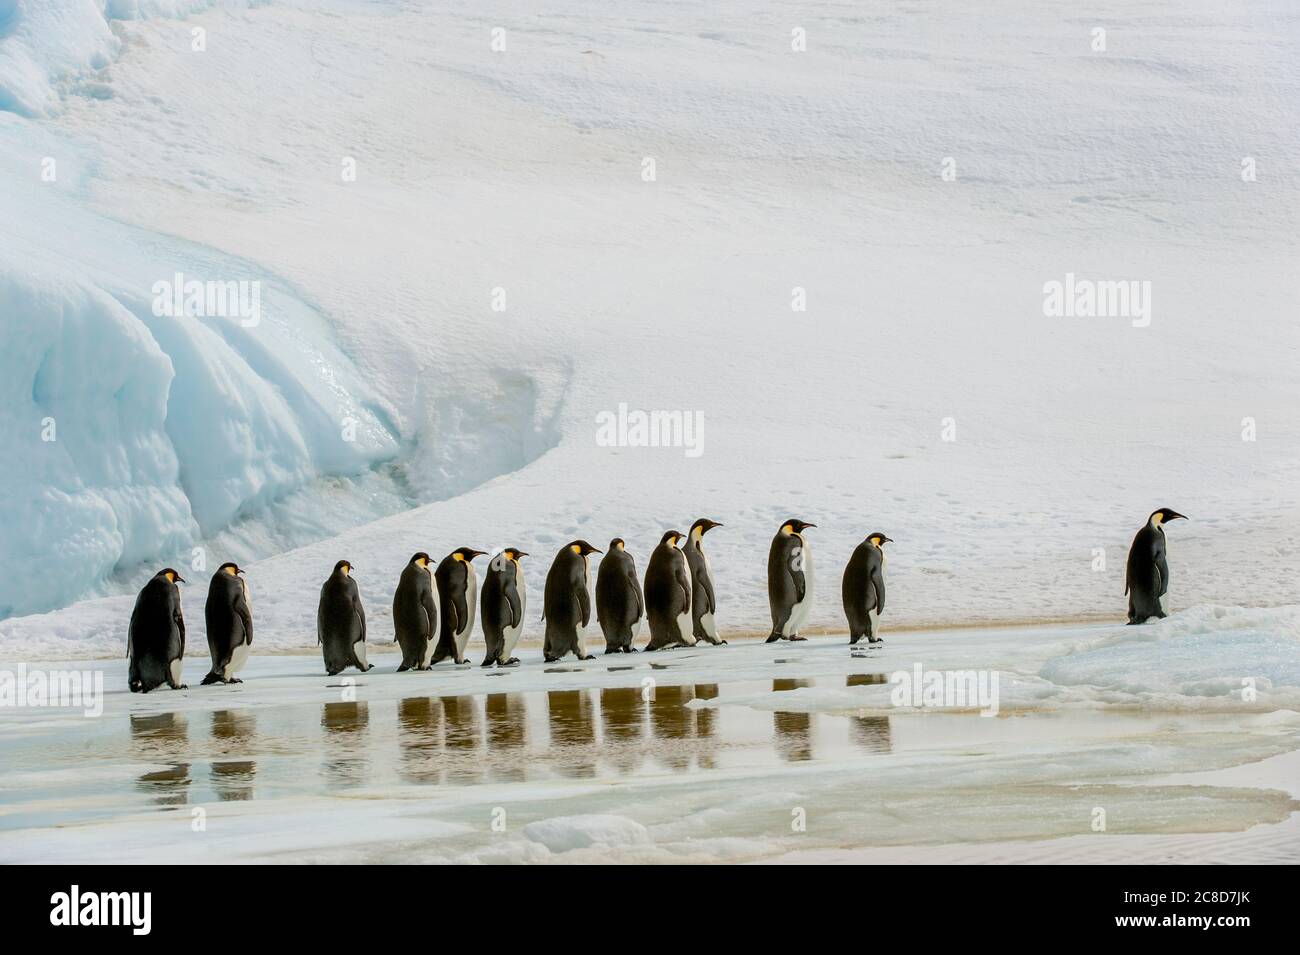 Un gruppo di pinguini dell'imperatore (Atenodytes forsteri) che camminano sopra il ghiaccio veloce alla colonia dei pinguini dell'imperatore all'isola di Snow Hill nel mare di Weddell in Antar Foto Stock